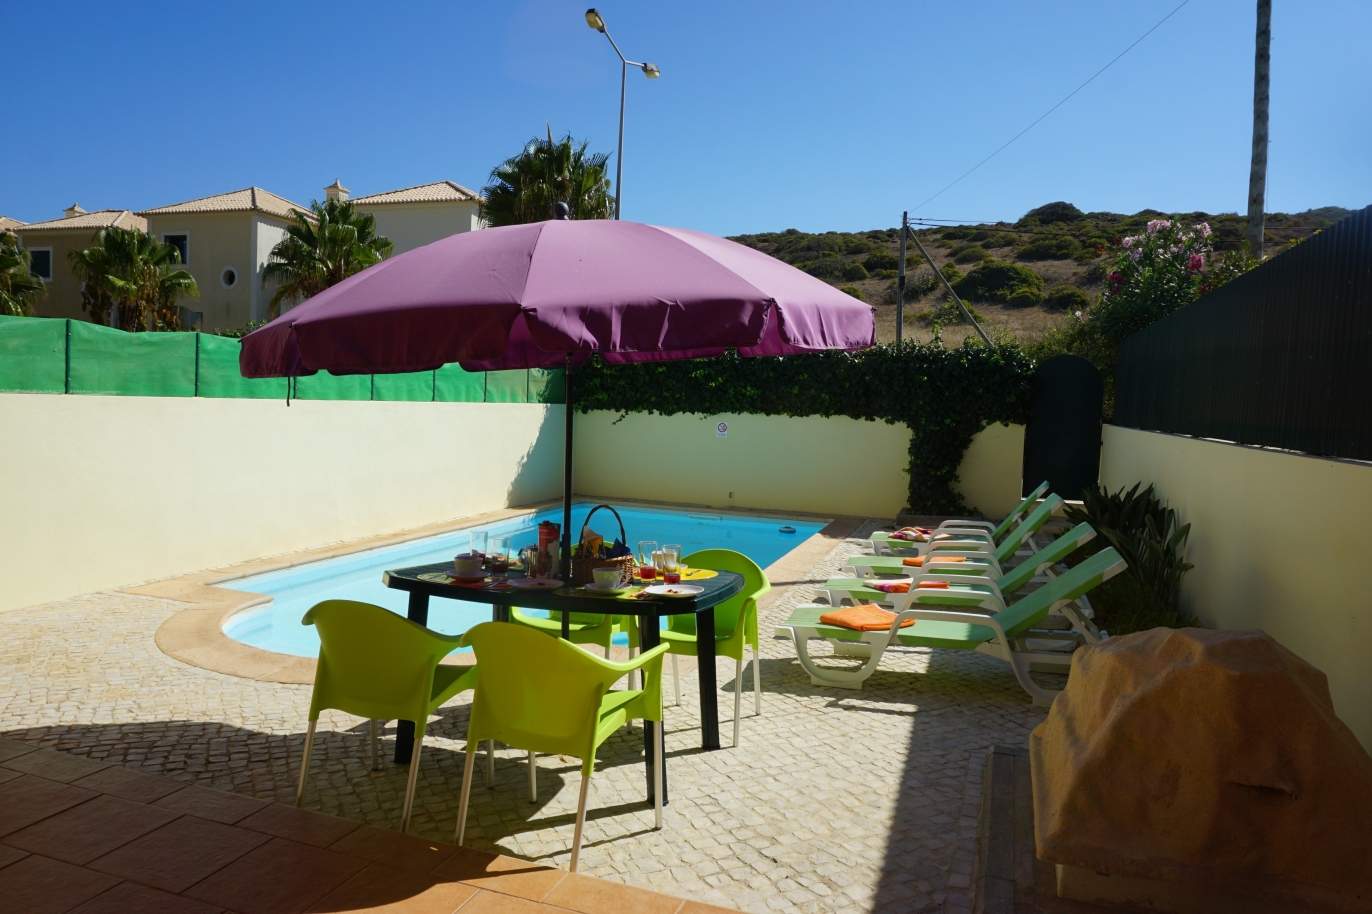 Venda de moradia com piscina, Budens,Vila do Bispo, Algarve, Portugal_117779